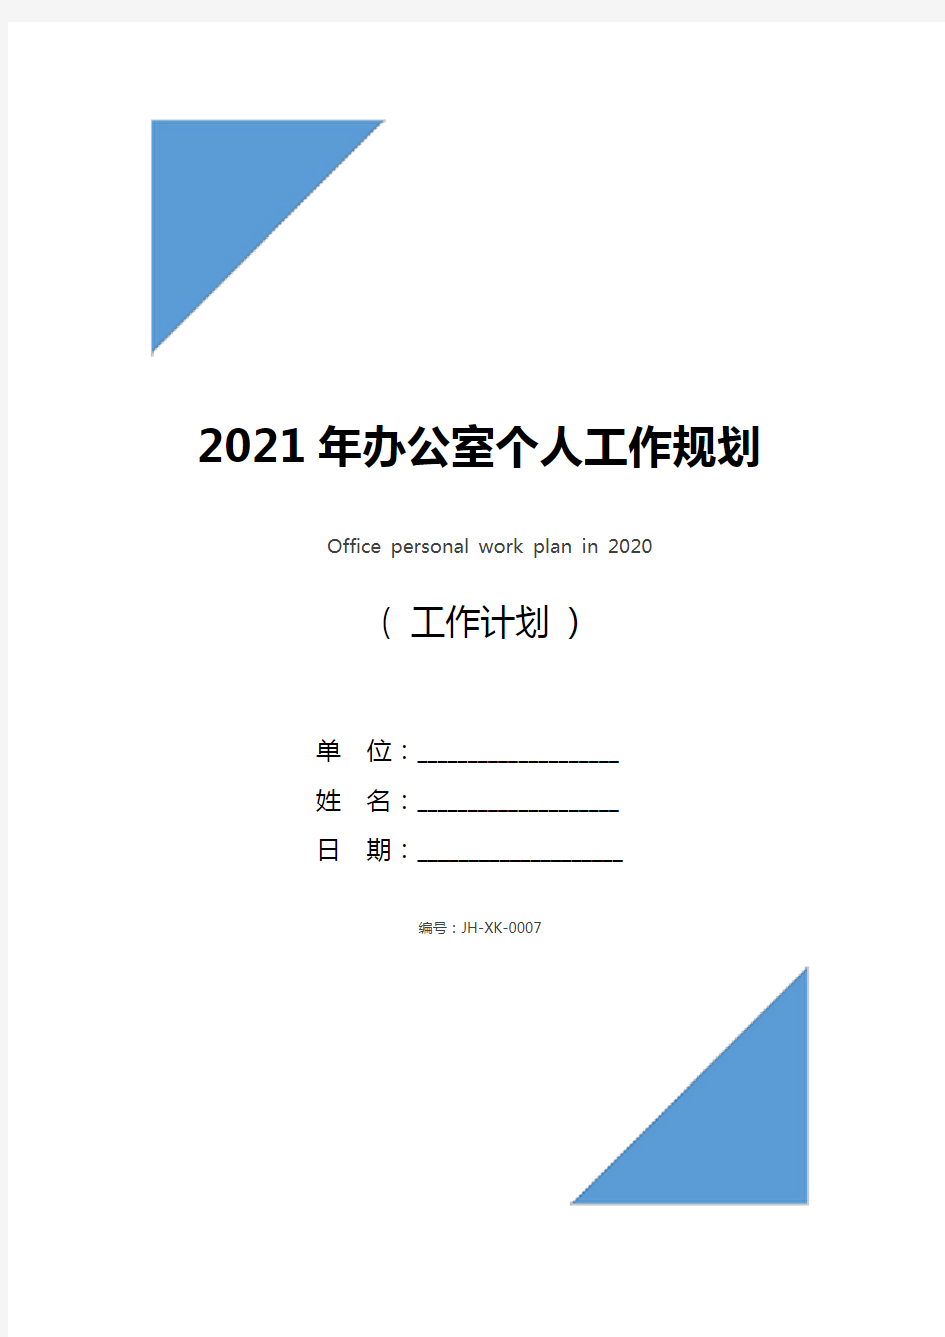 2021年办公室个人工作规划(通用版)